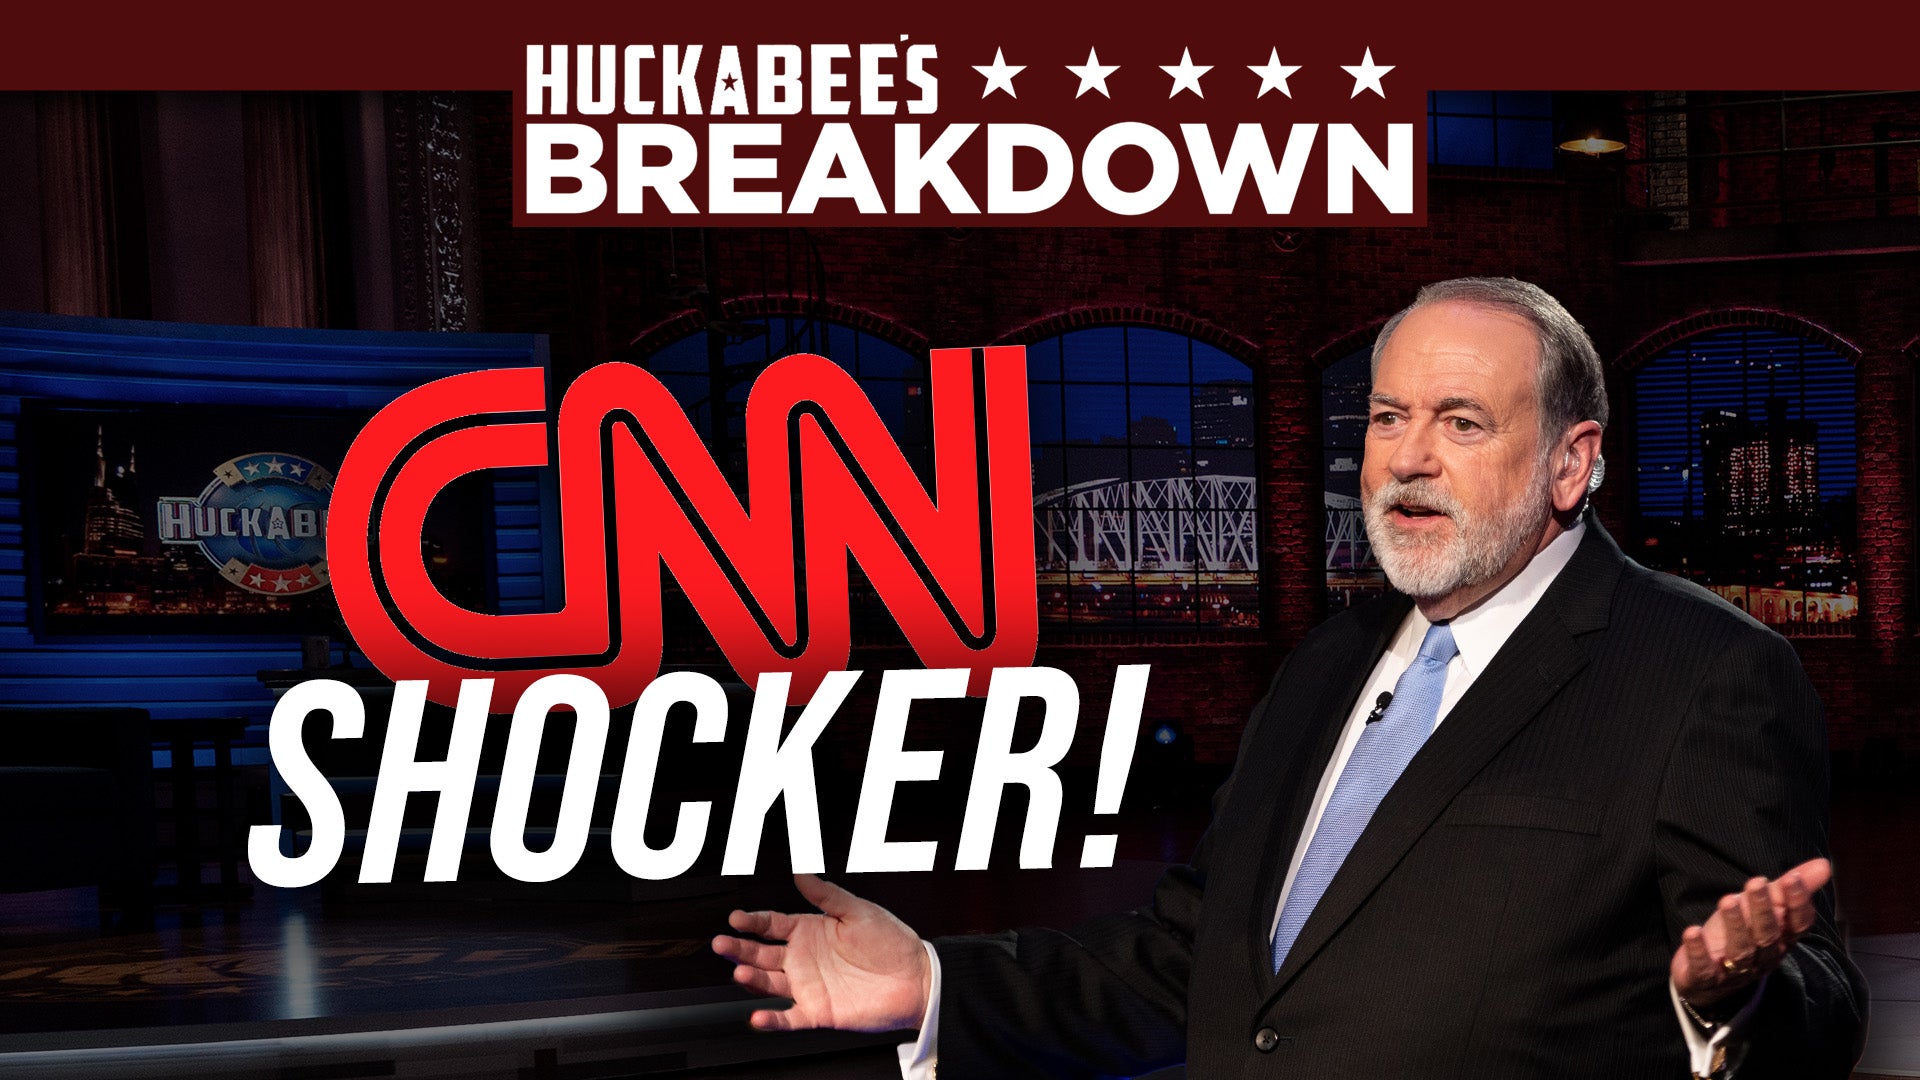 Huckabee's Breakdown - CNN Shocker - Thumb